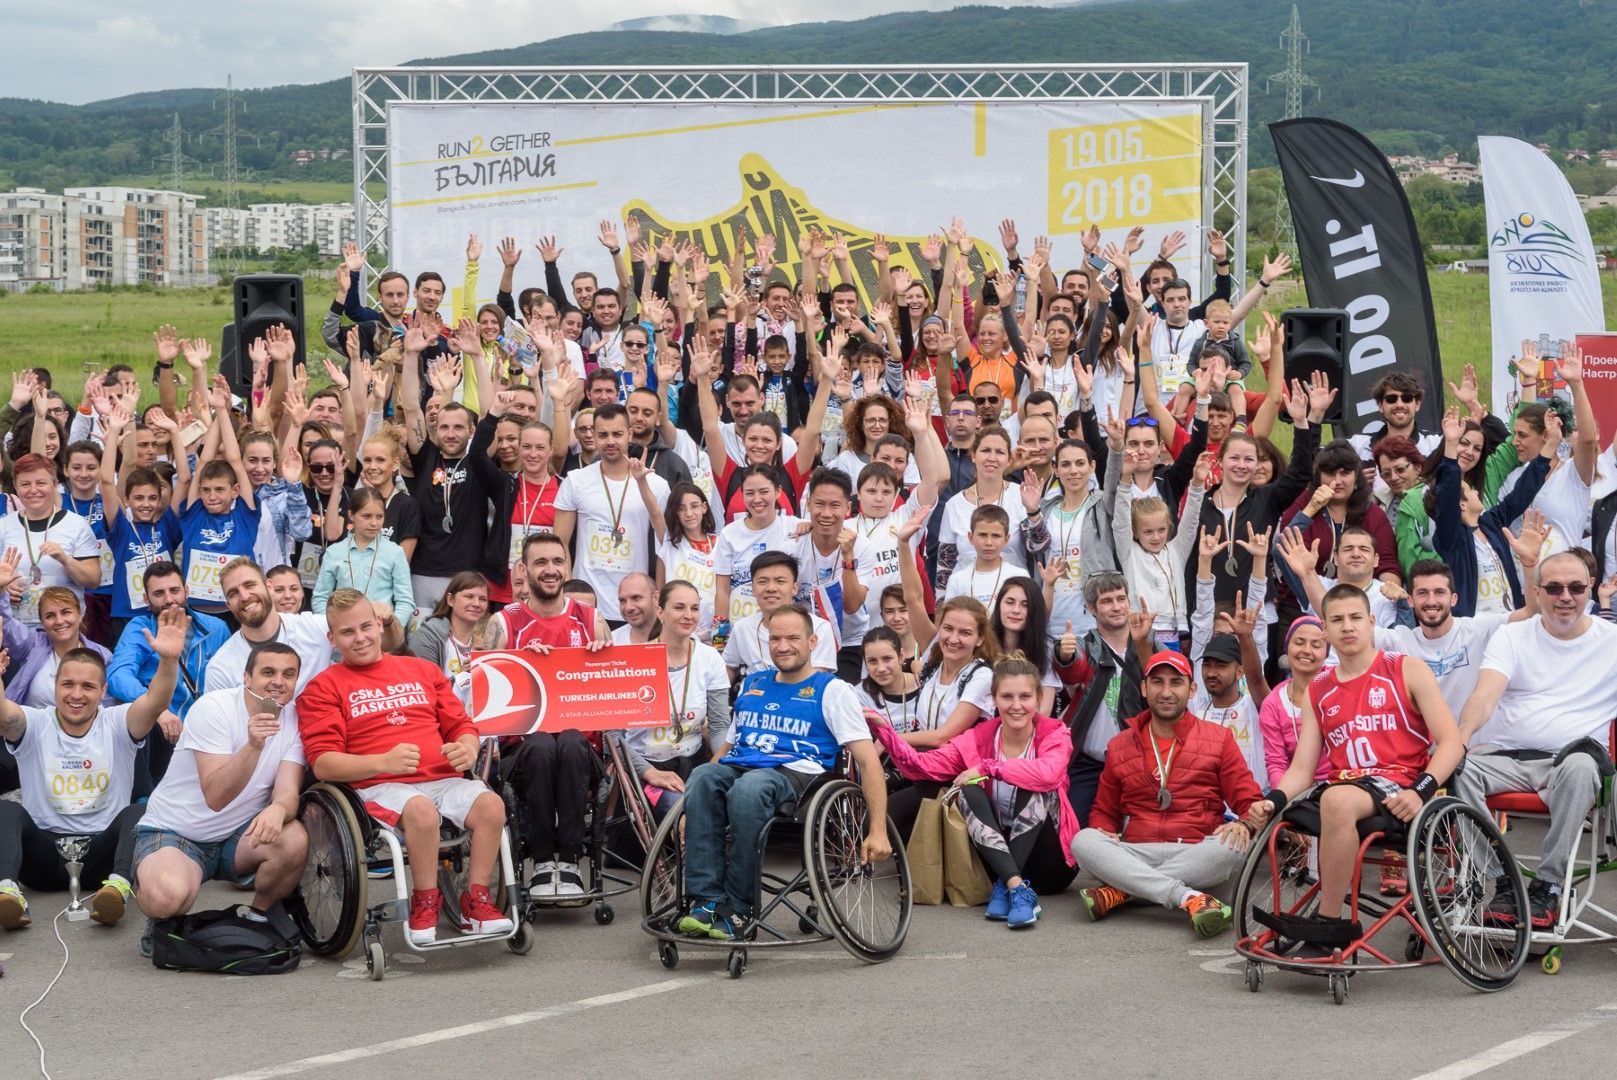 Хора с увреждания и приятелите им с големи сърца тичаха заедно в подкрепа на спорта за всички и създаването на Адаптиран младежки кариерен център